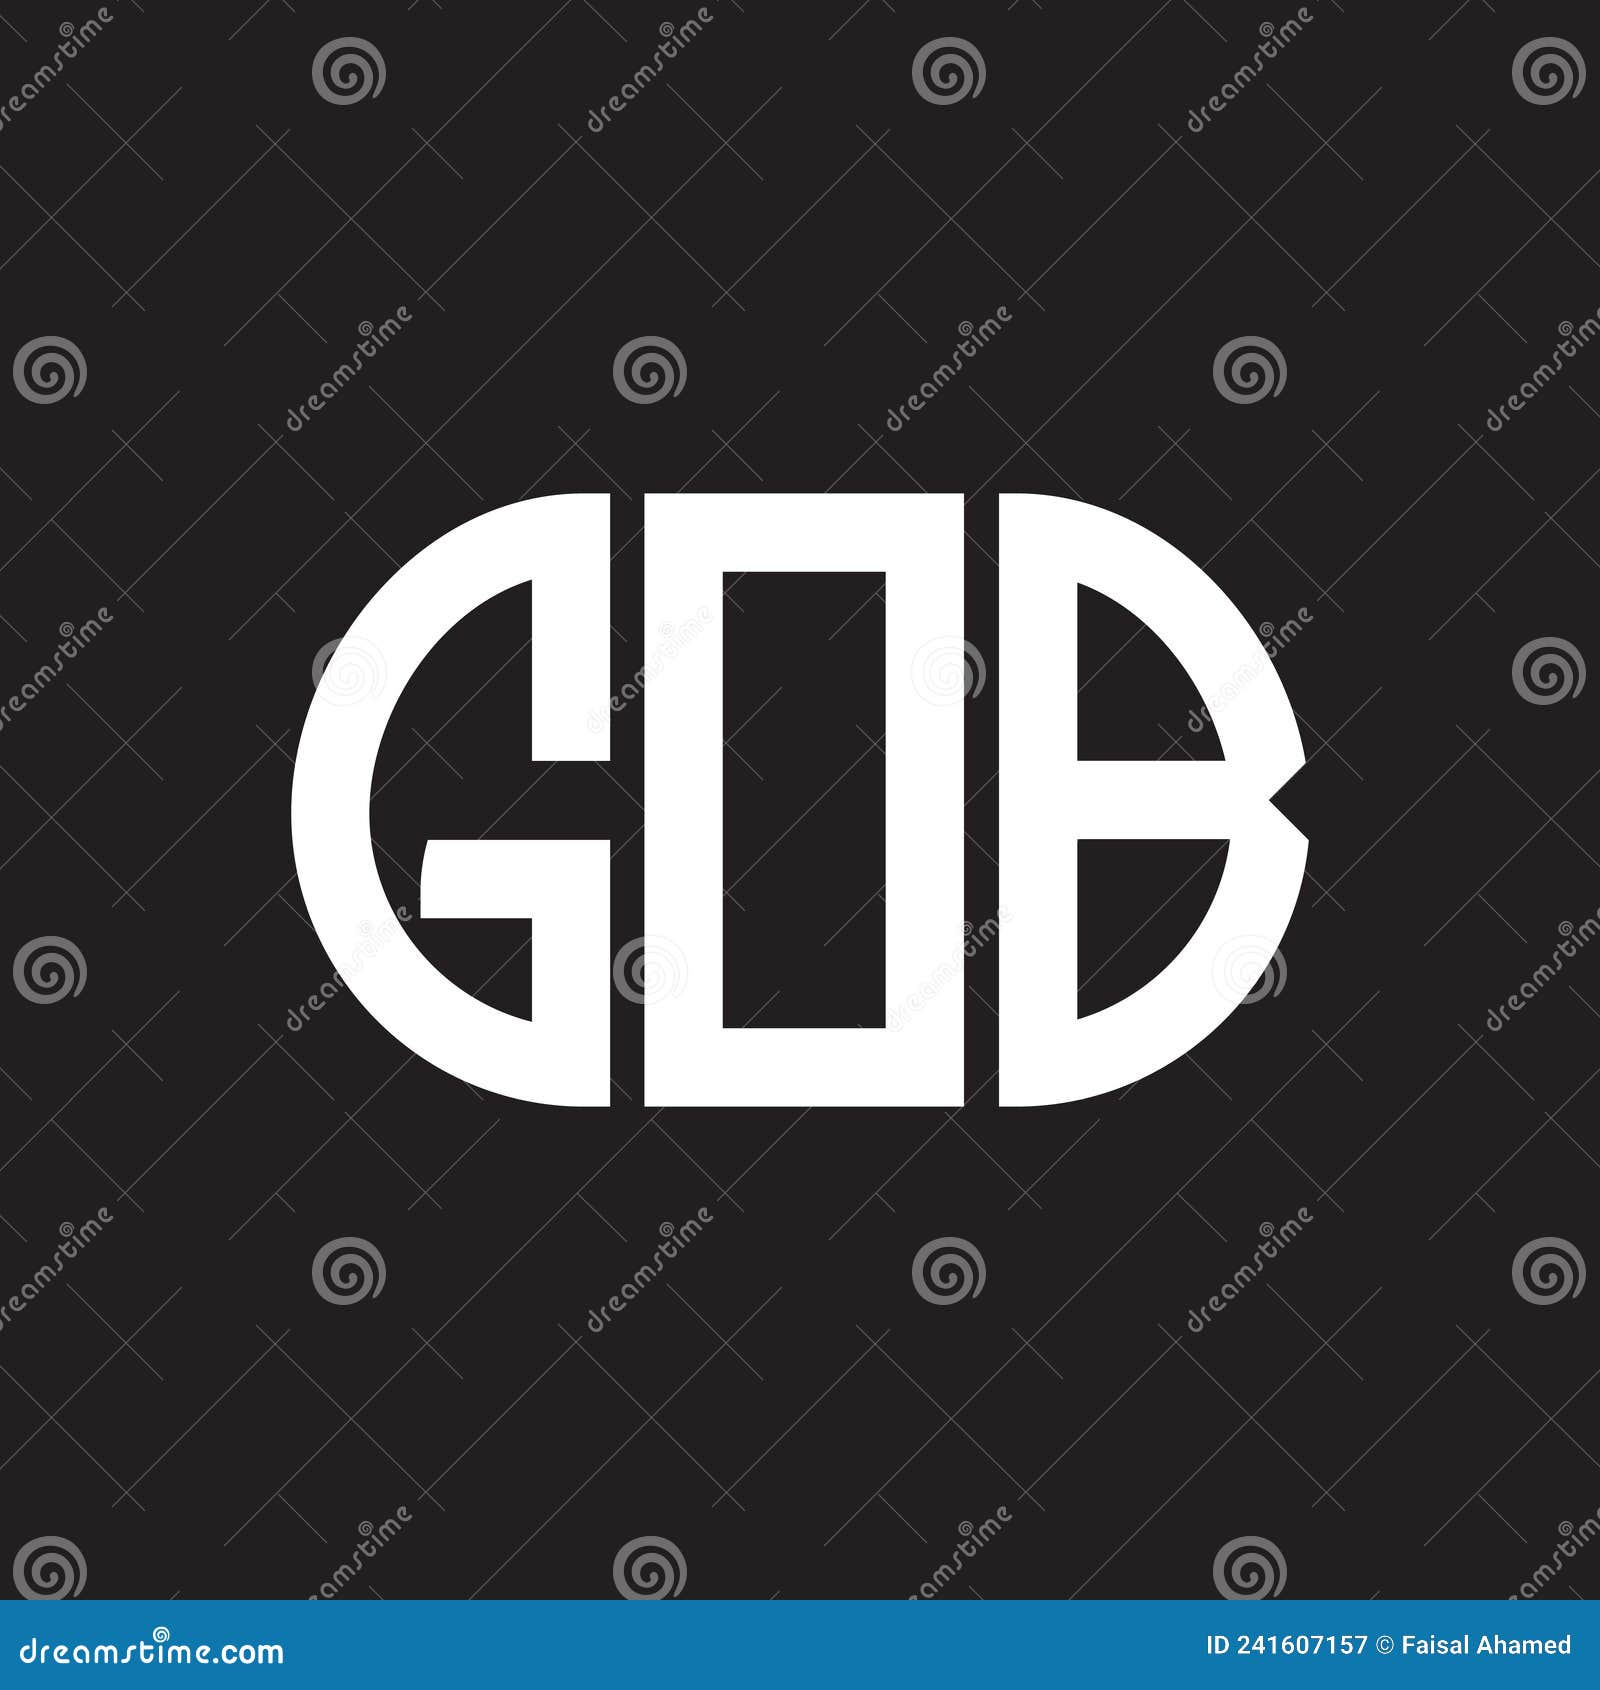 gob letter logo  on black background. gob creative initials letter logo concept. gob letter 